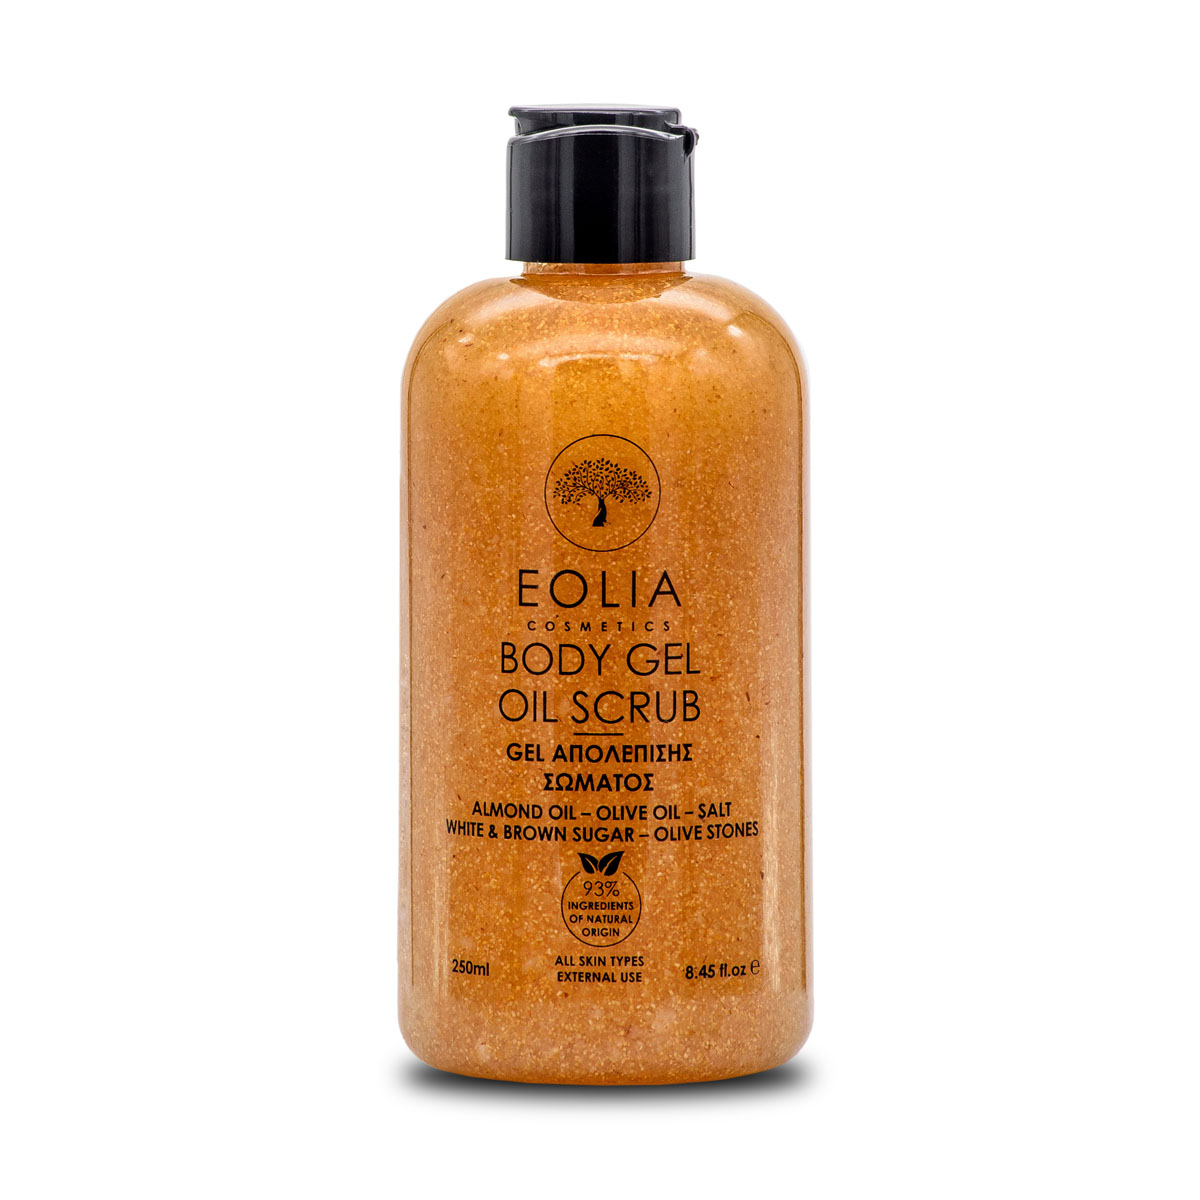 Eolia Body oil scrub